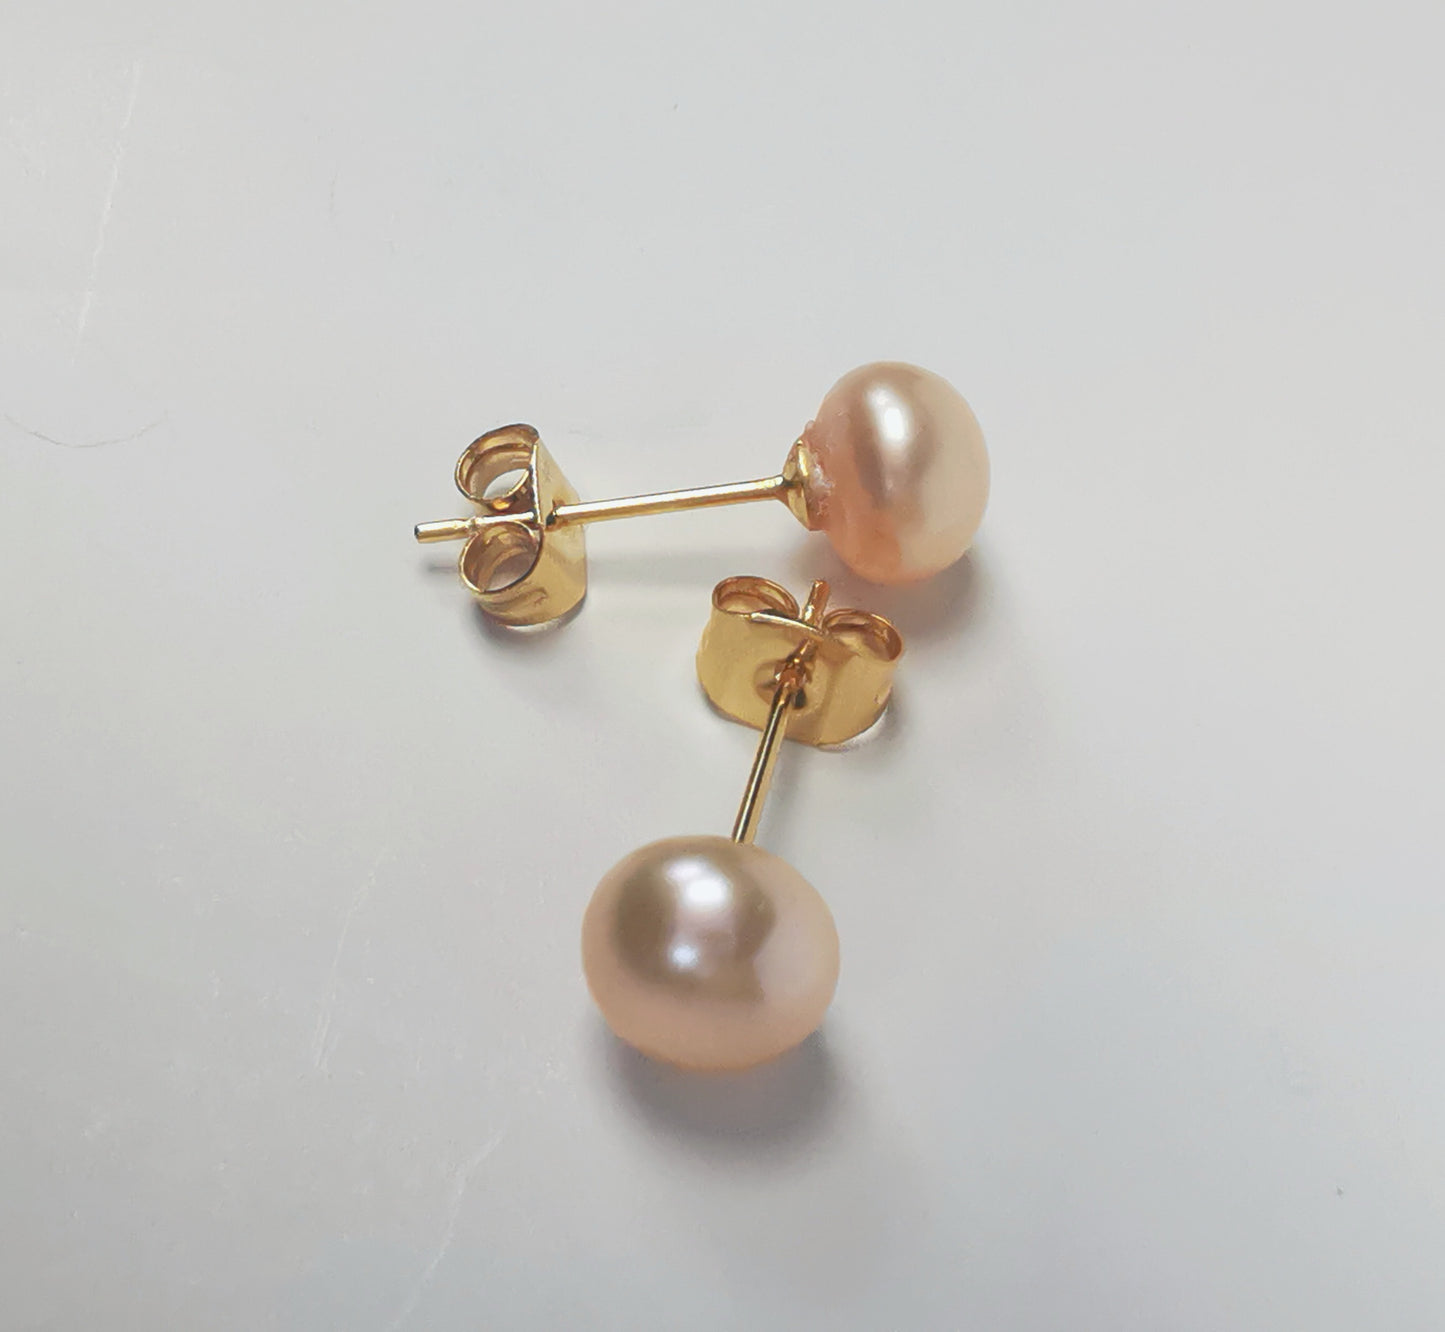 Boucles d'oreilles perles de culture rose 7mm sur clous plaqués or. Présentées perpendiculairement, boucle de dessus perle à droite, celle de dessous, verticale perle en bas sur un fond blanc. Vue de dessus.